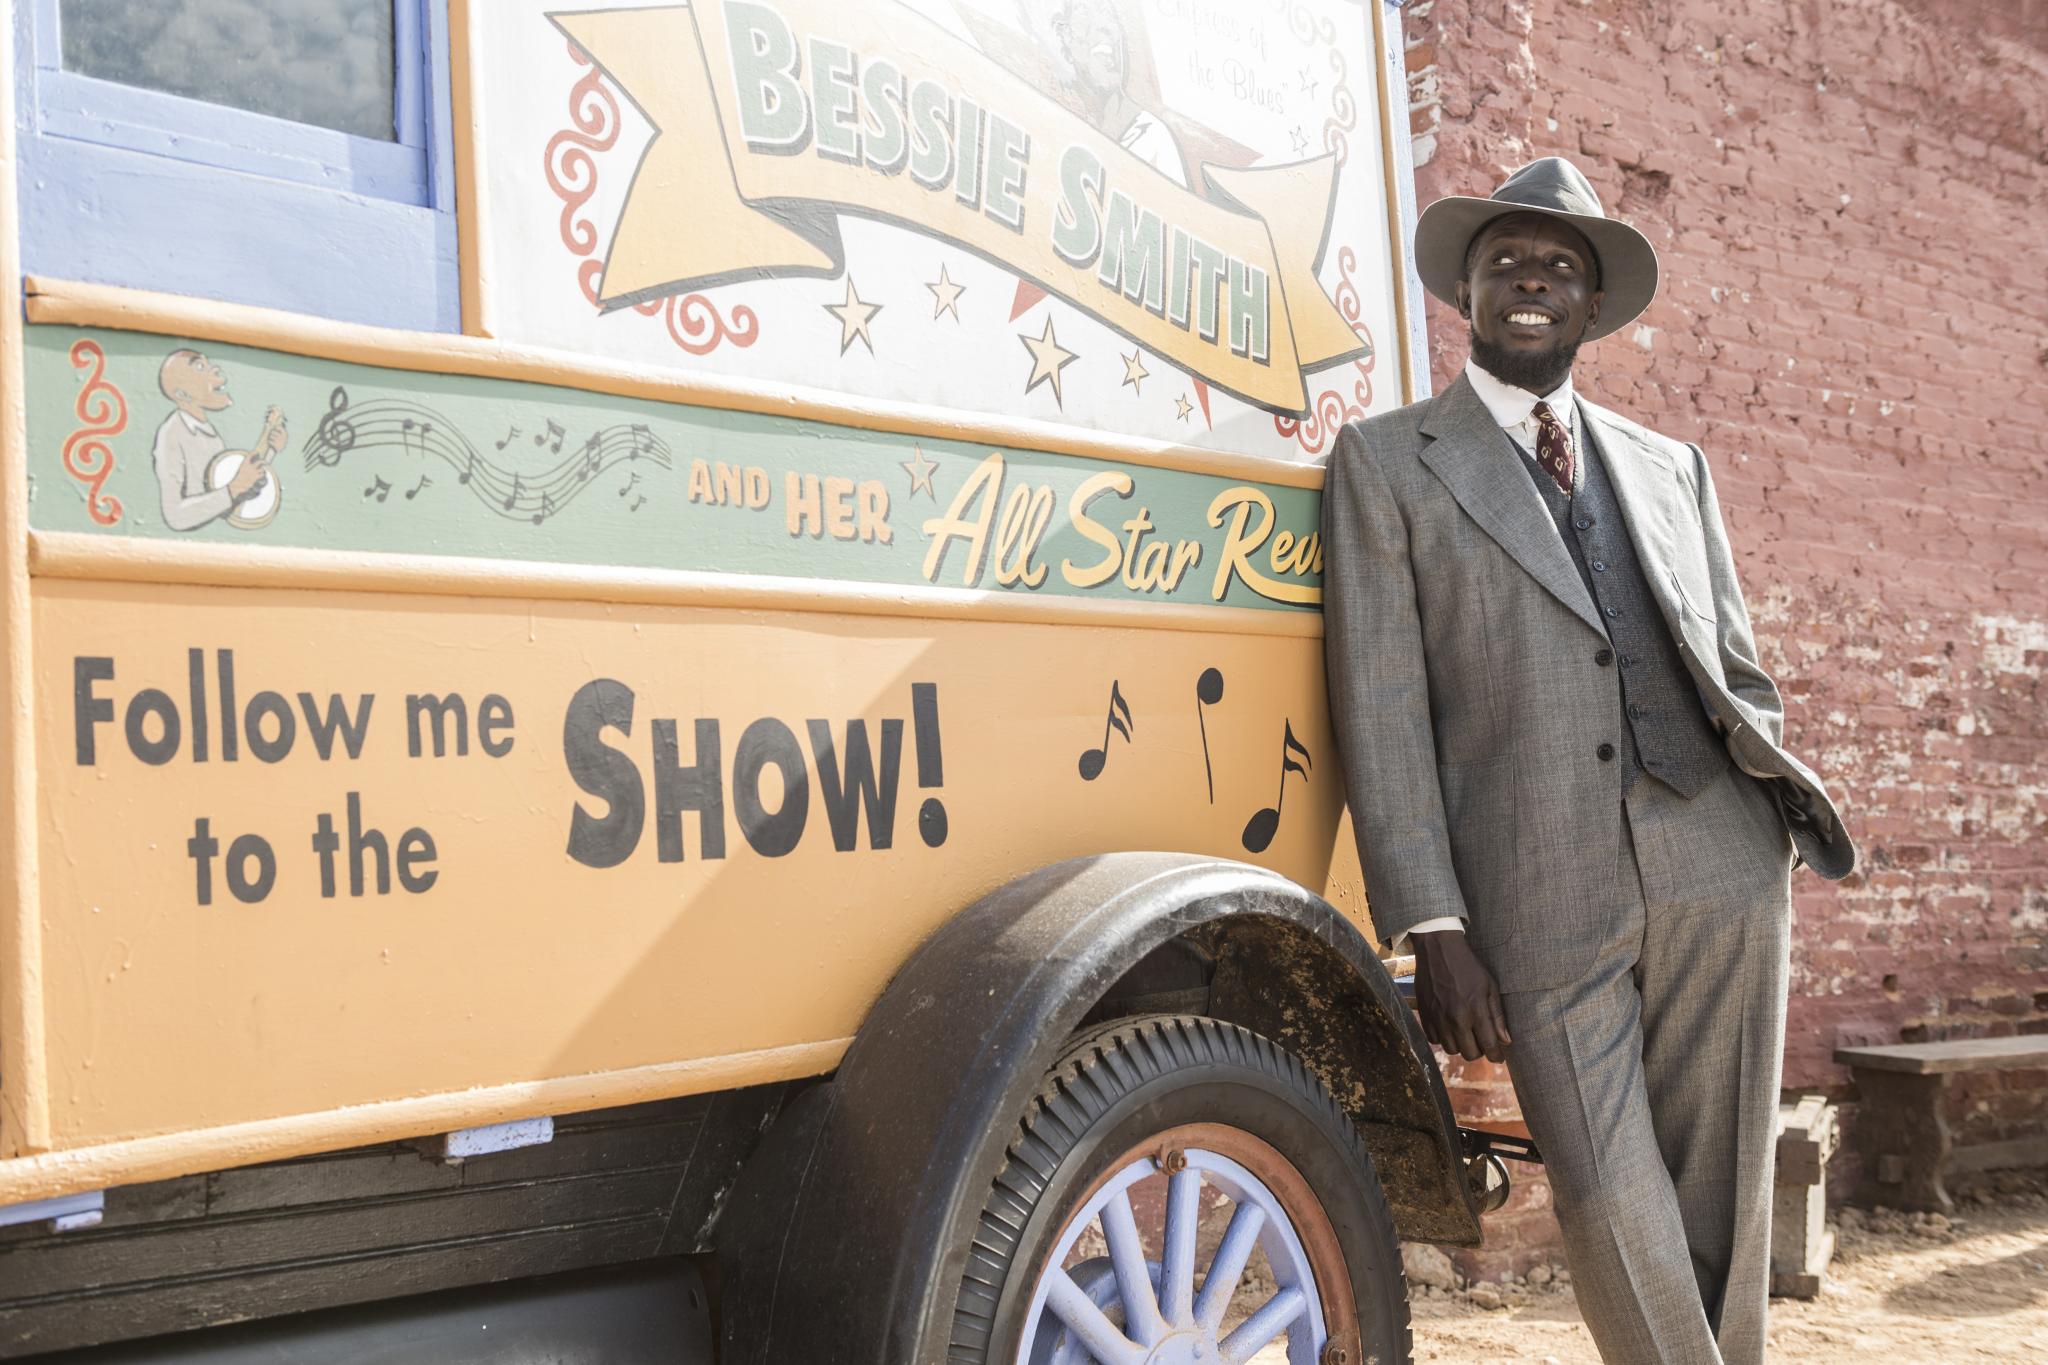 Photos: Sneak Peek HBO's "Bessie" Starring Queen Latifah
